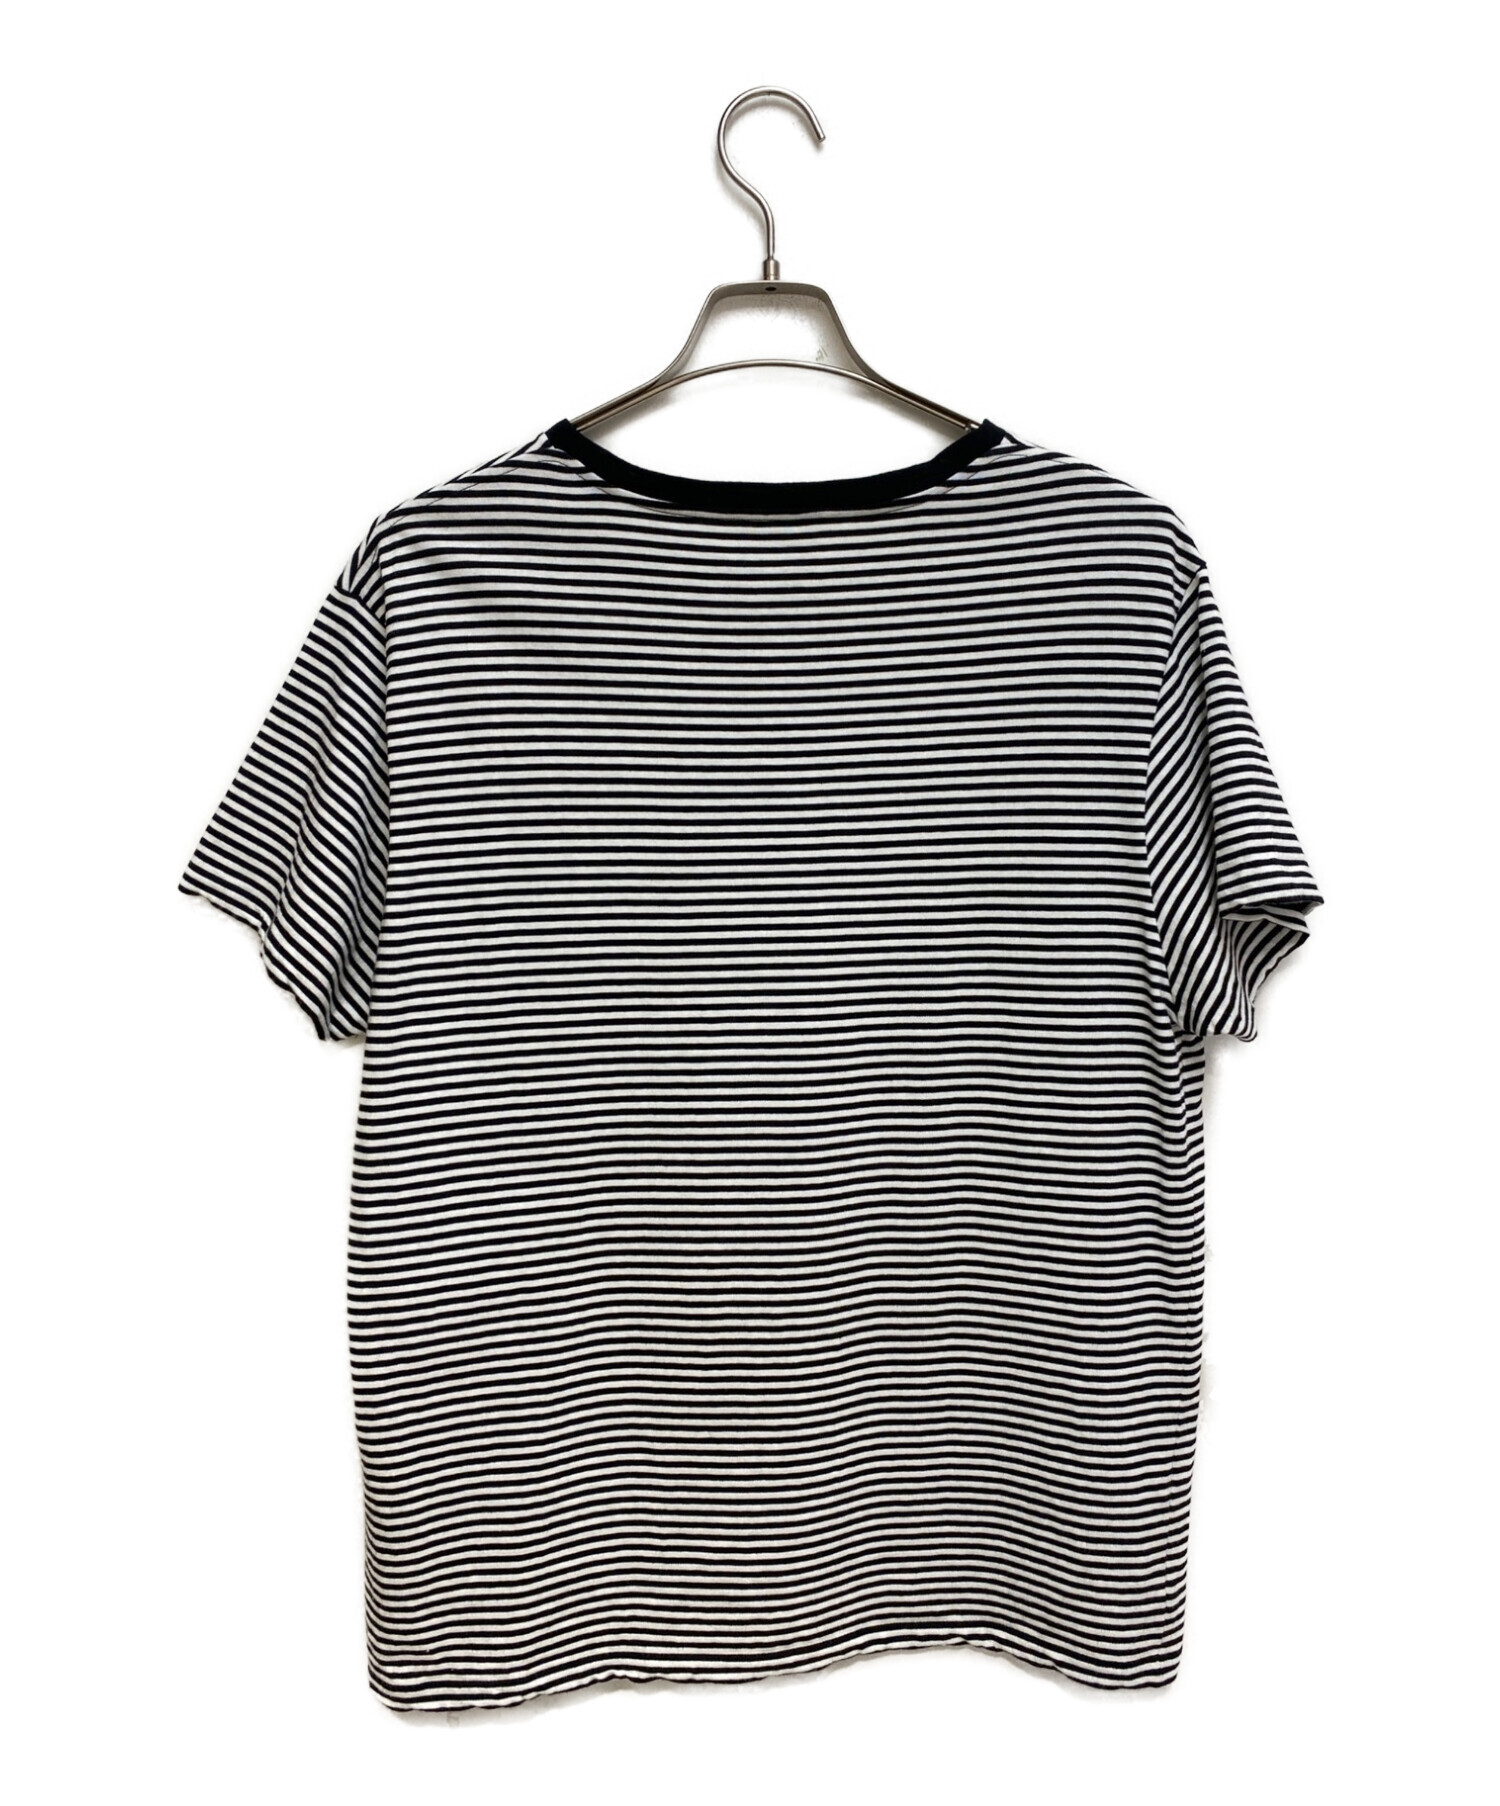 CELINE (セリーヌ) トリオンフ ボーダーTシャツ ブラック×ホワイト サイズ:M